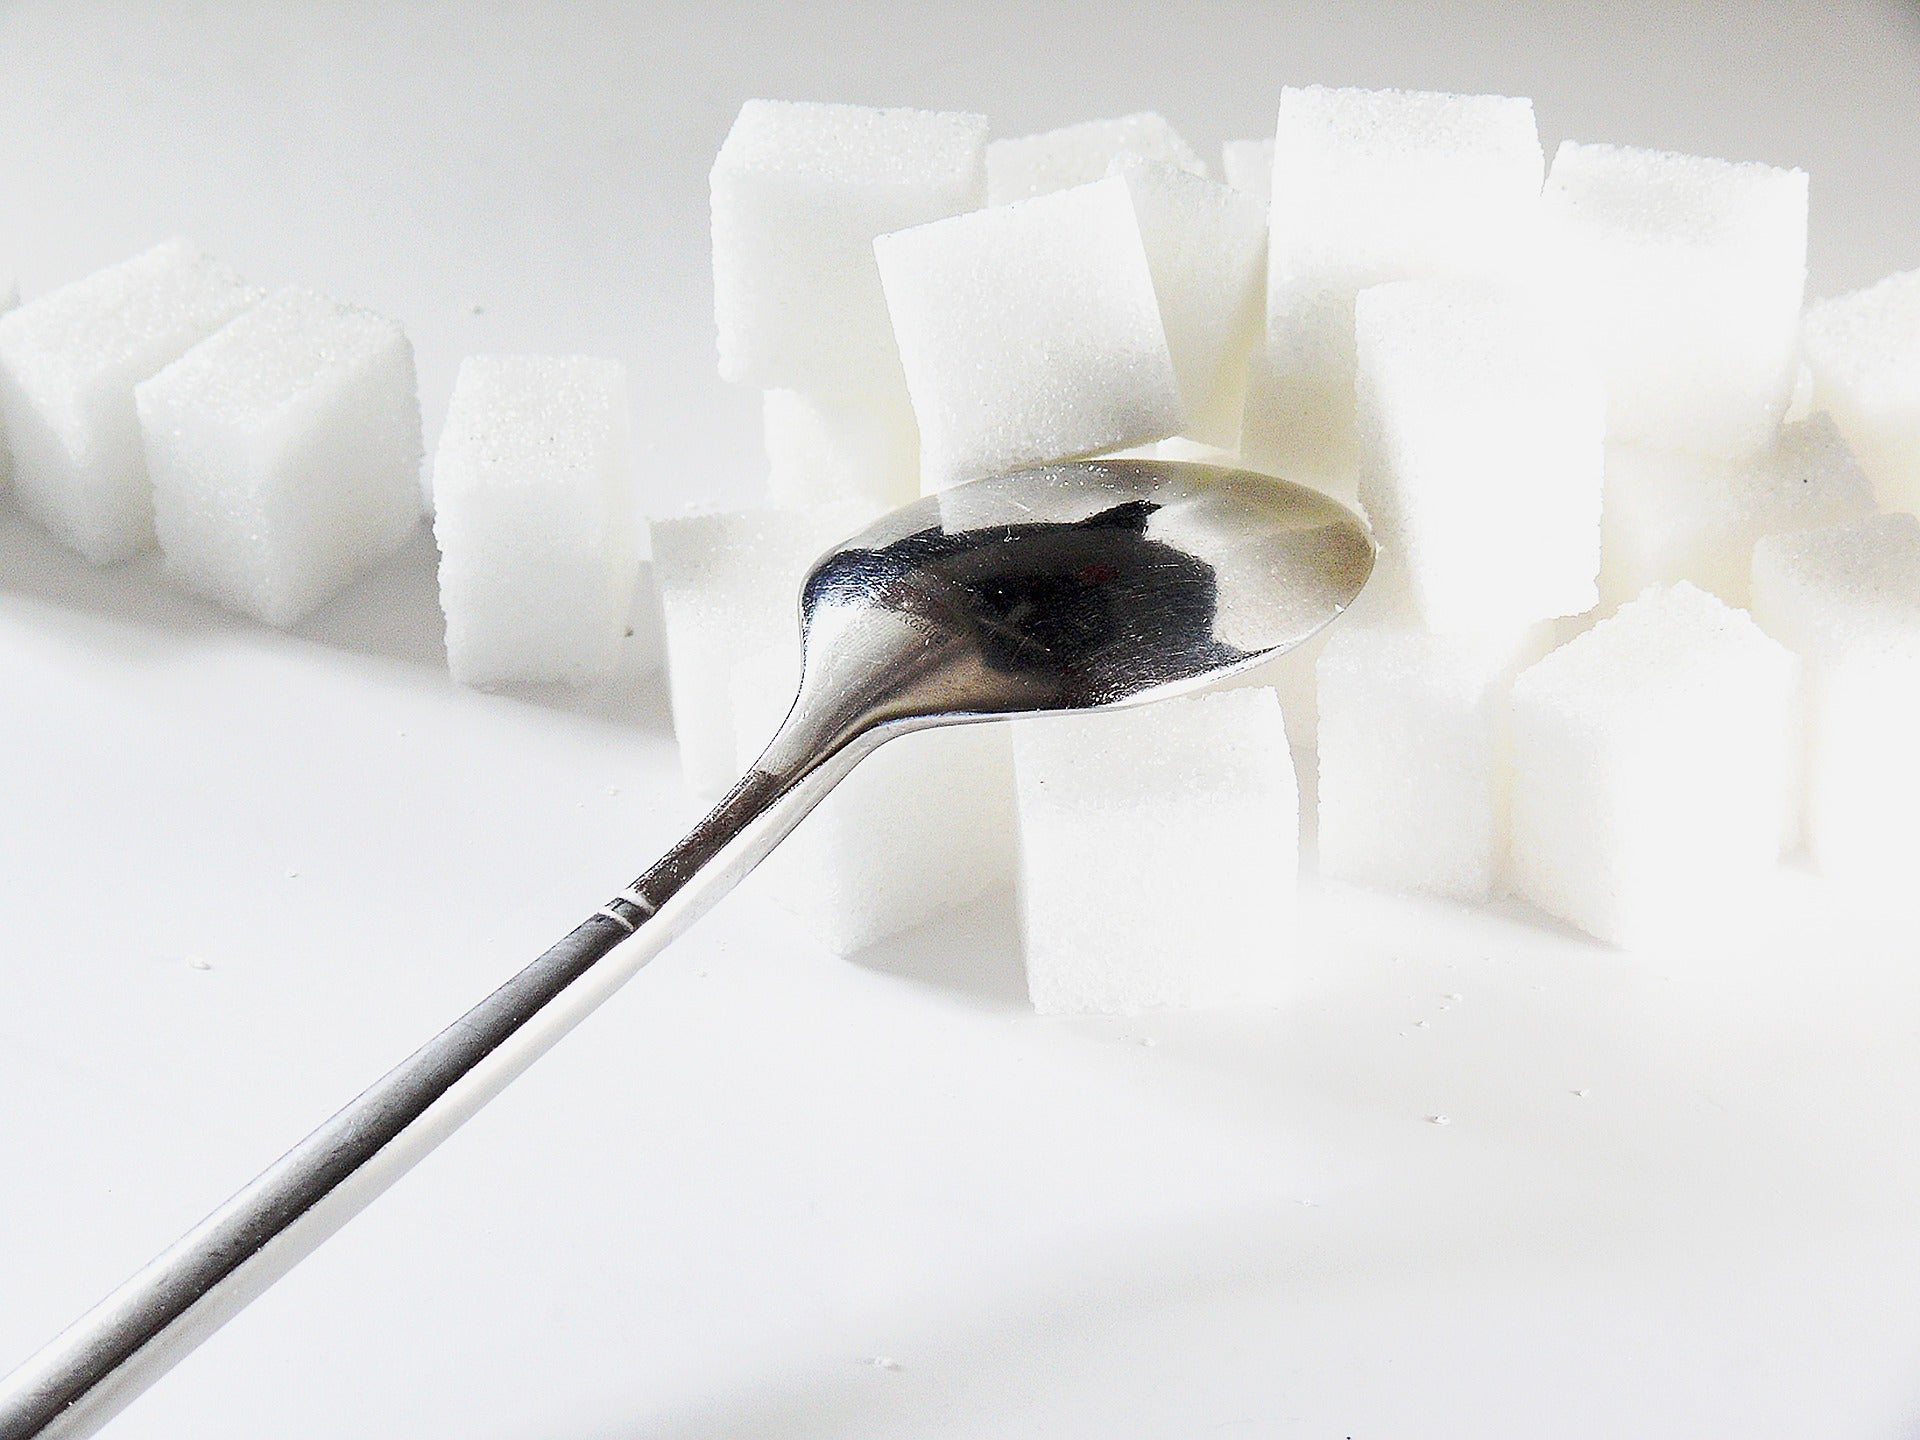 The Sugar Problem in America